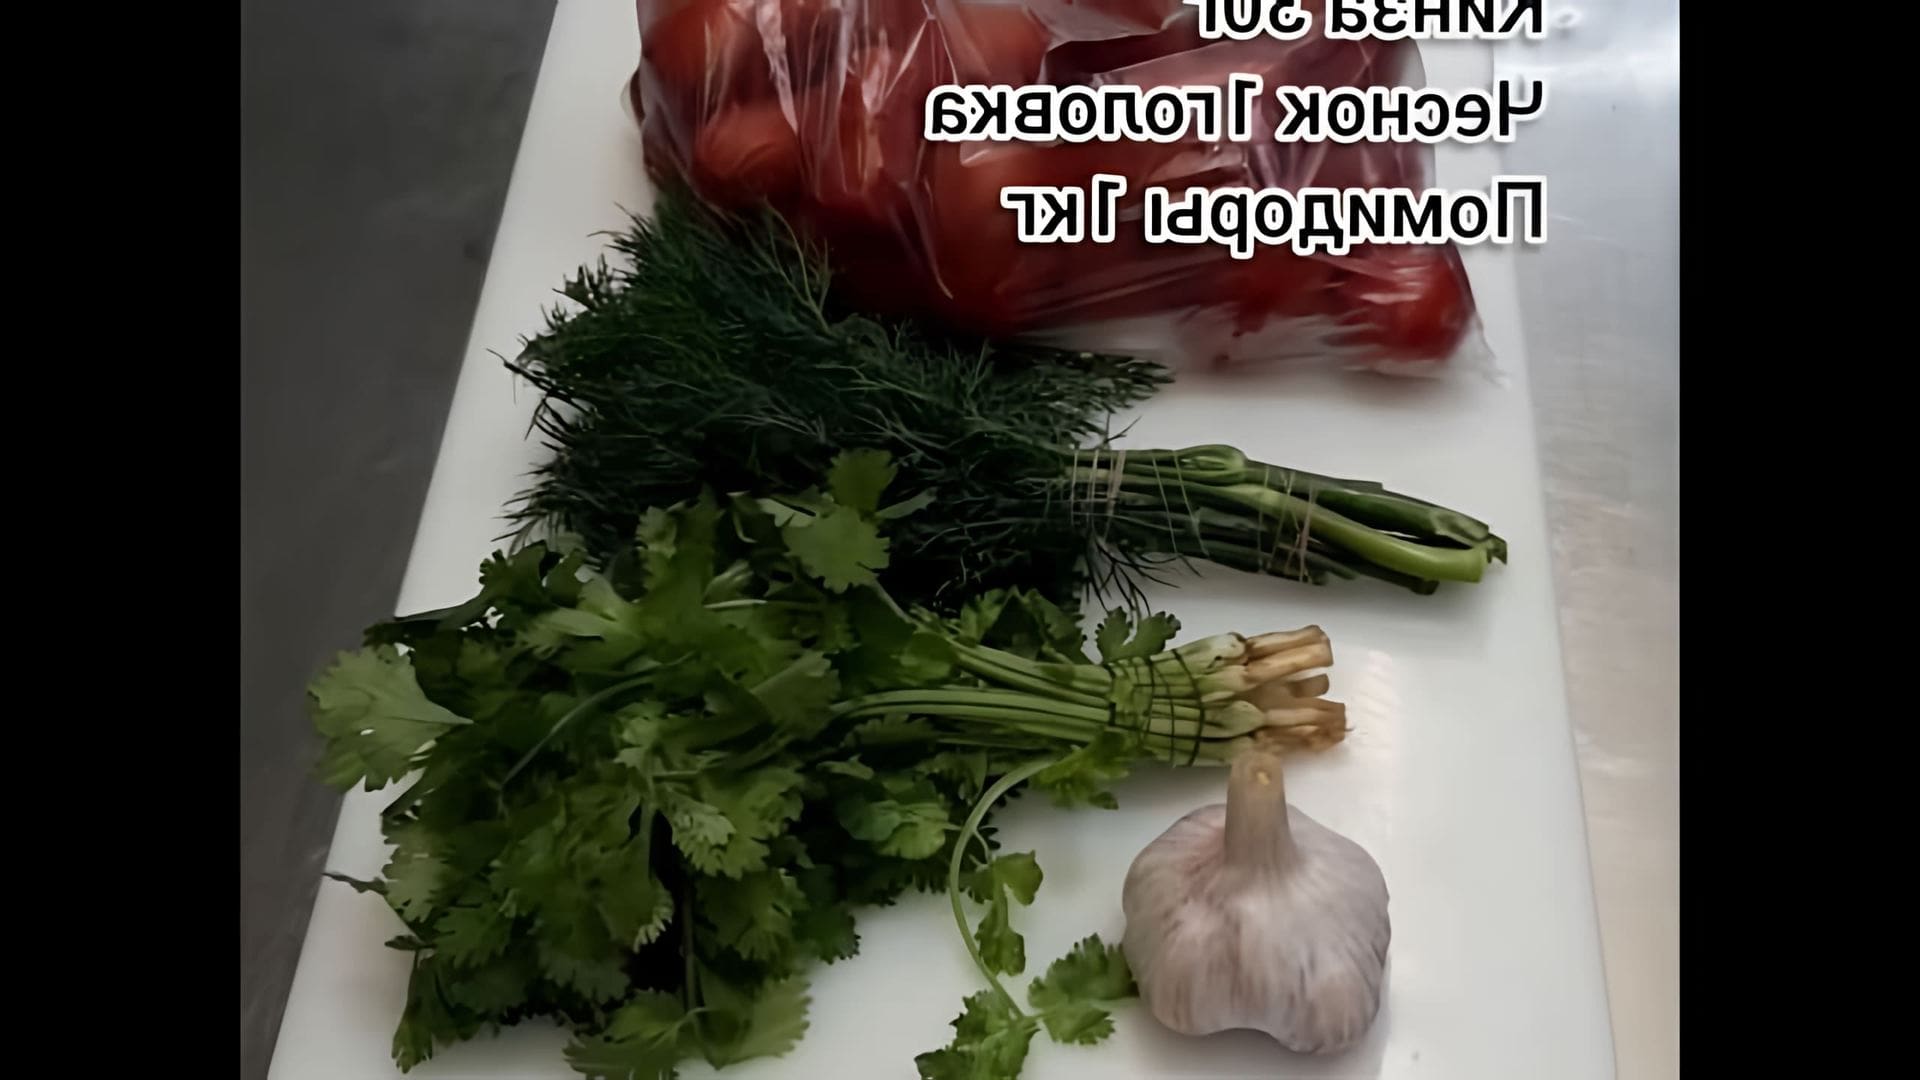 В этом видео демонстрируется быстрый и простой способ приготовления малосольных помидоров